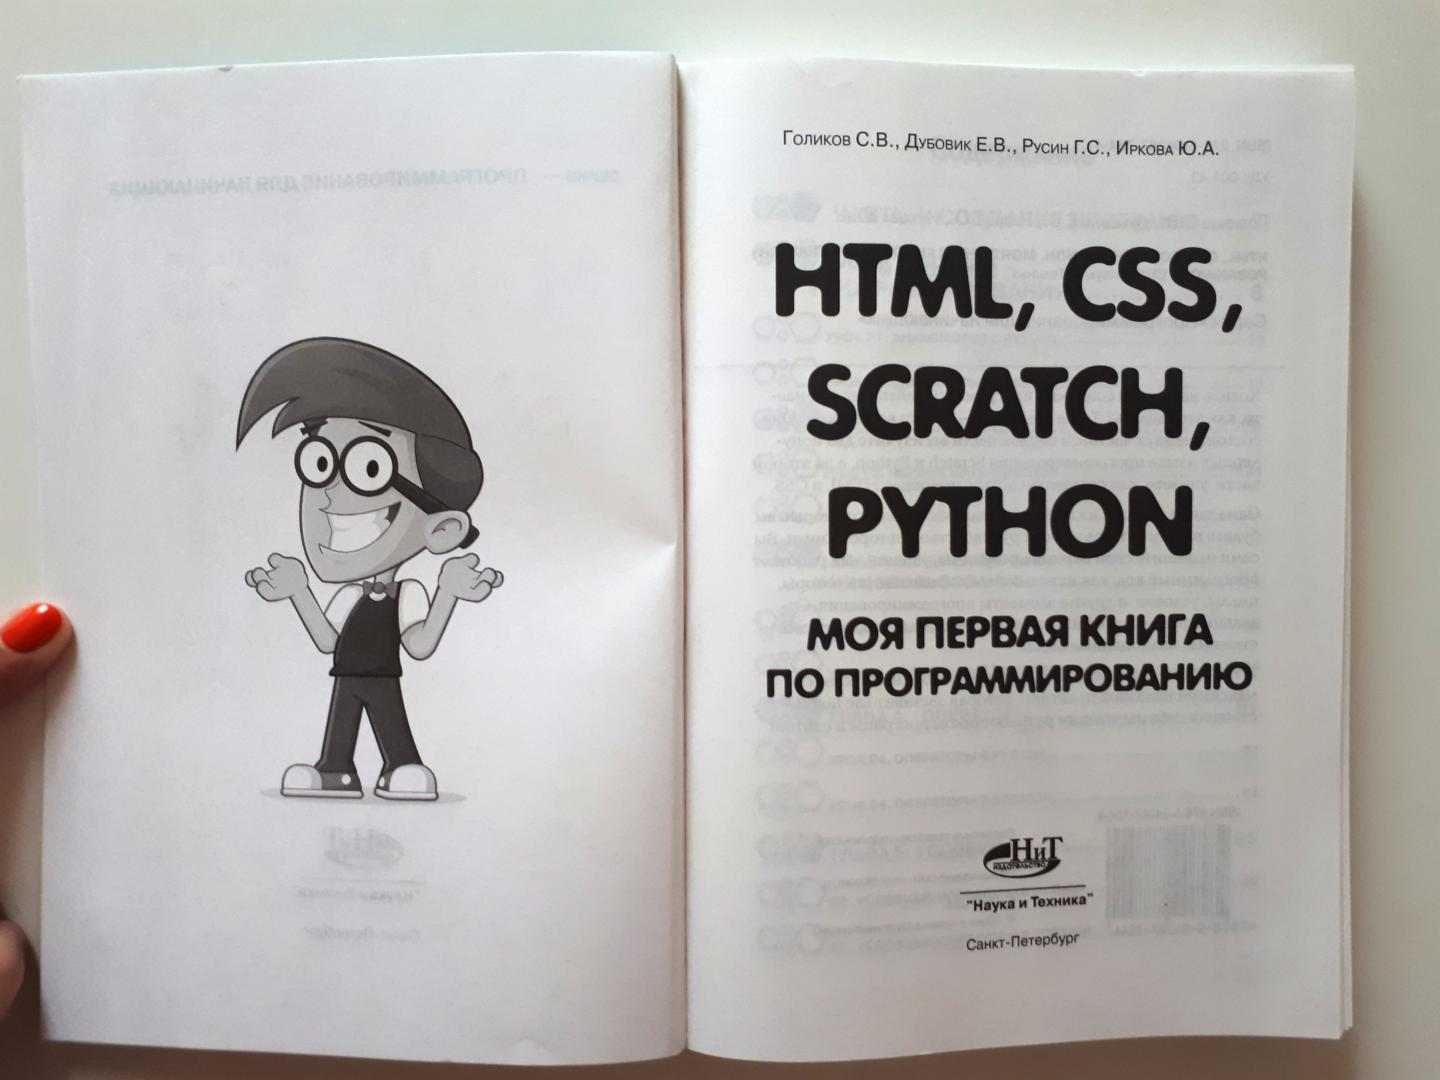 Иллюстрация 5 из 11 для HTML, CSS, Scratch, Python. Моя первая книга - Дубовик, Русин, Голиков | Лабиринт - книги. Источник: Лабиринт